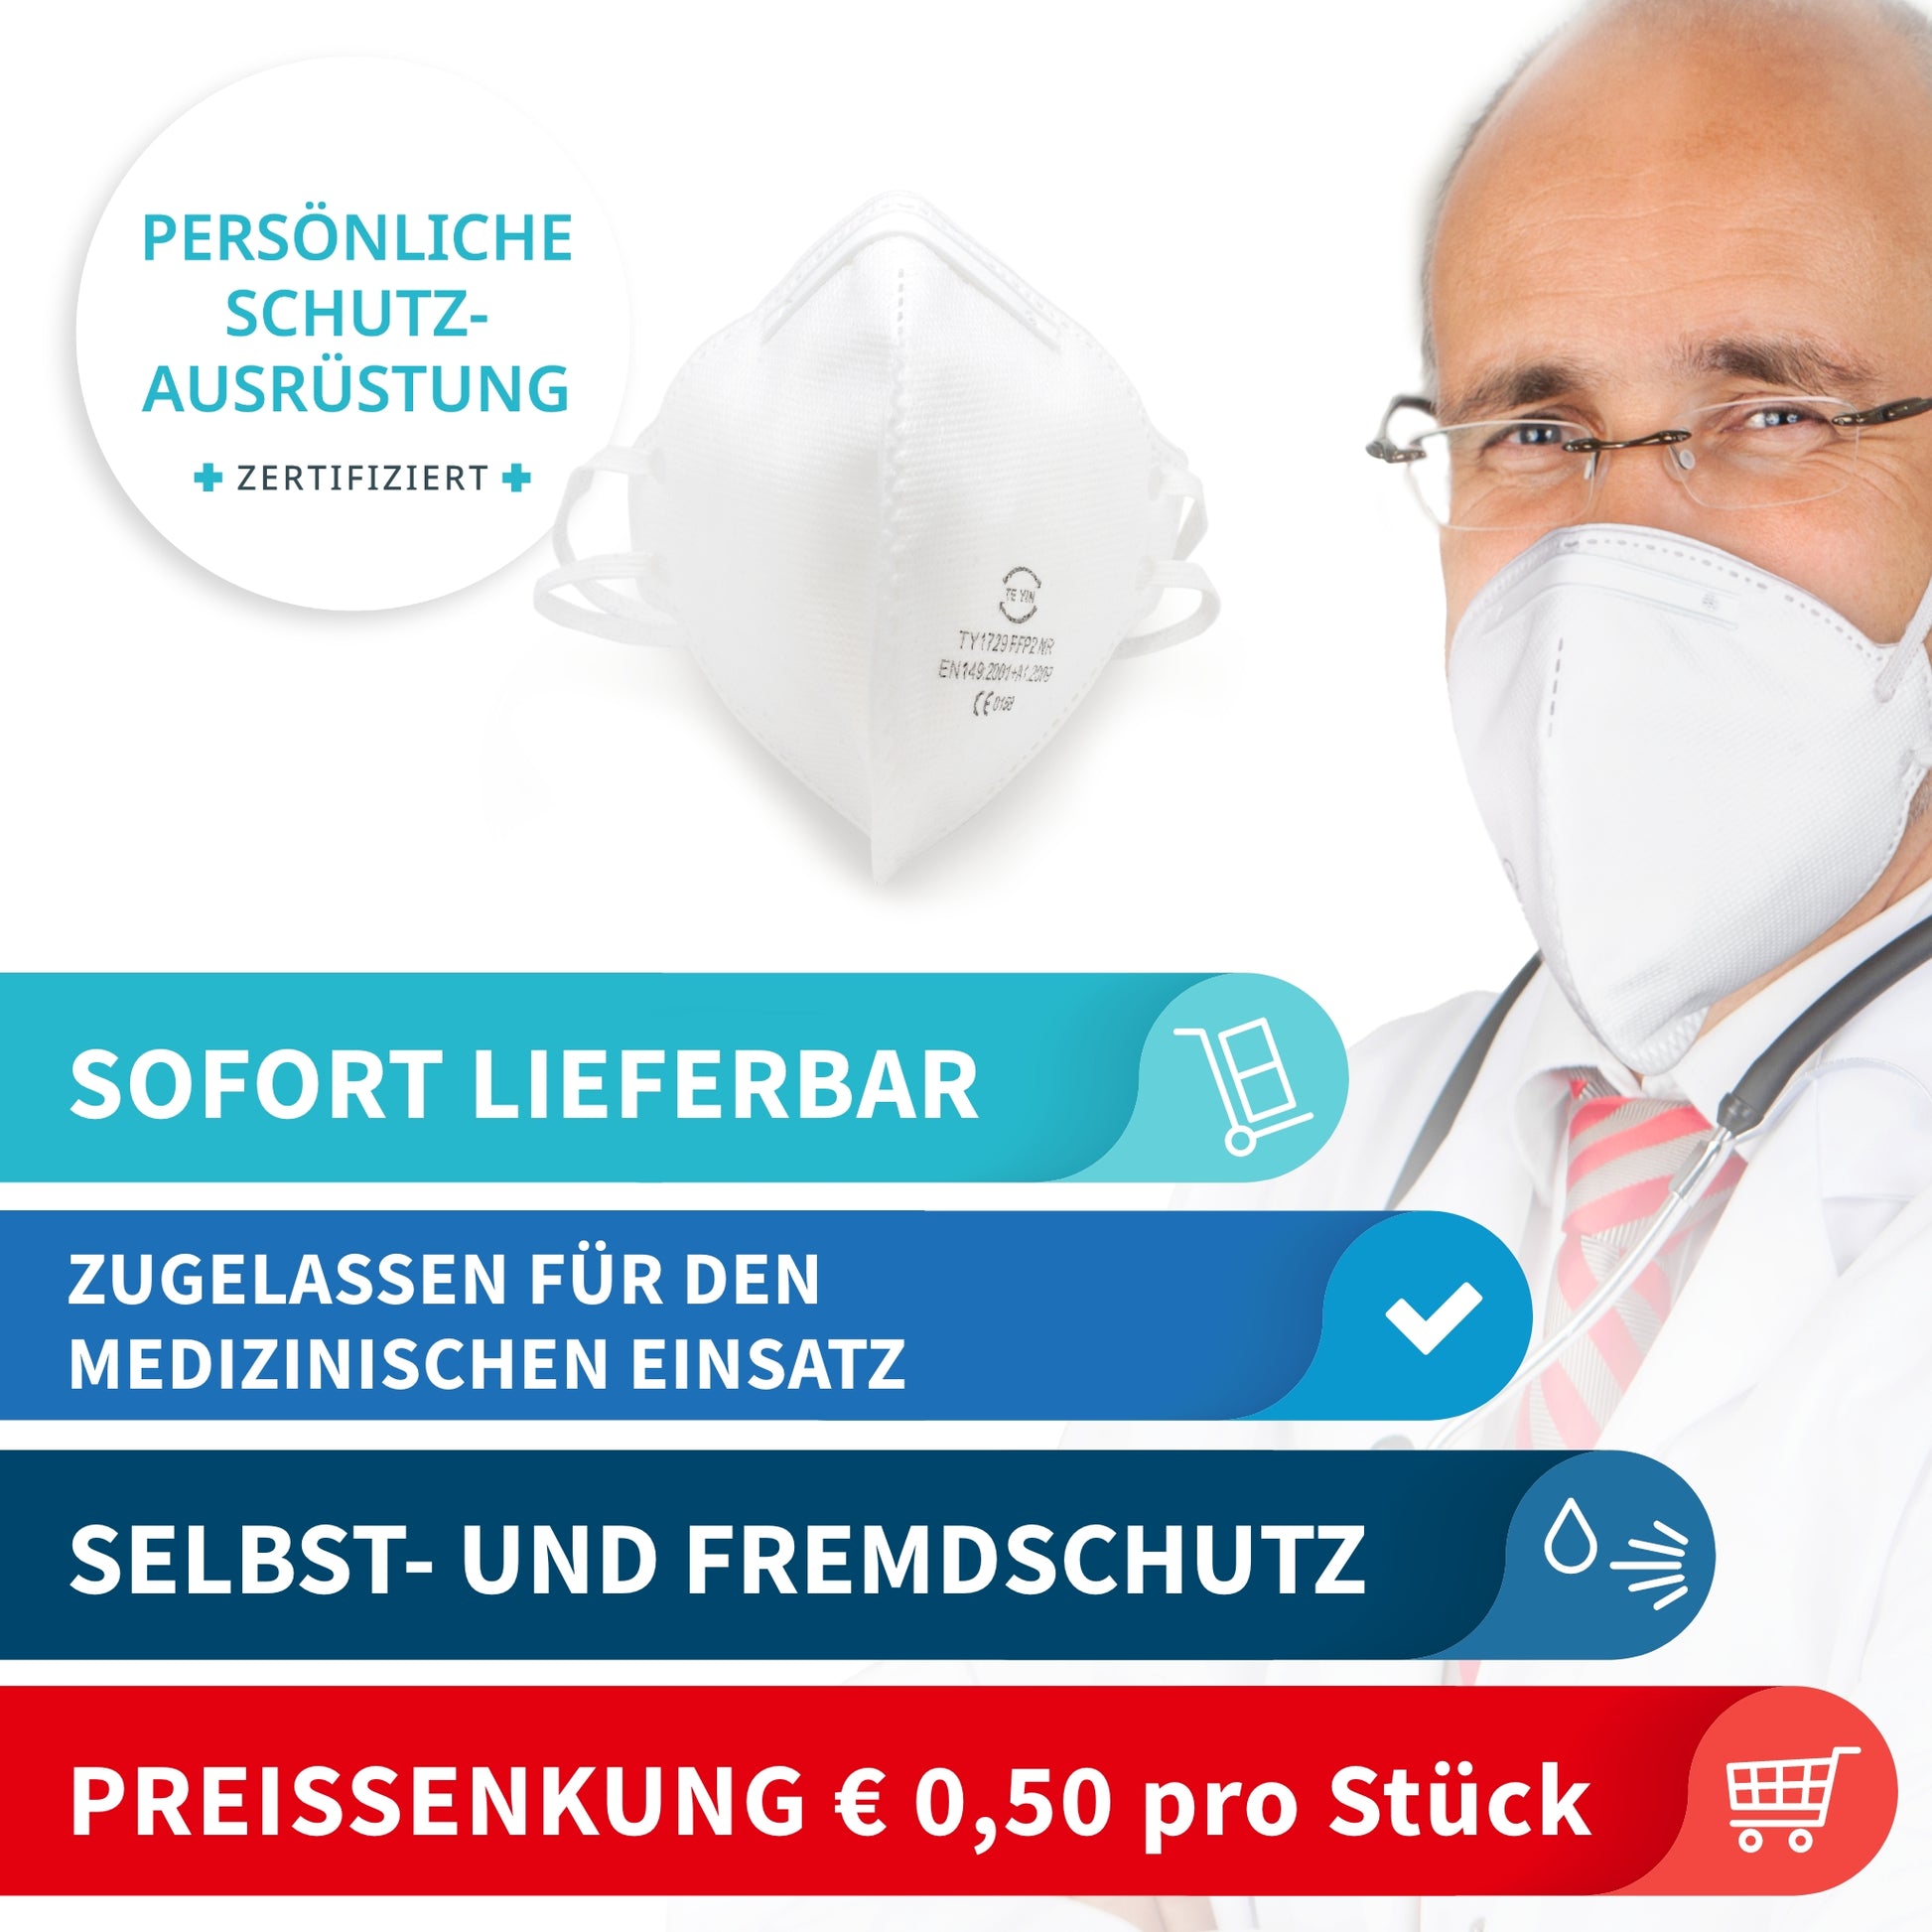 FFP2 Atemschutzmaske | Zertifiziert als Persönliche Schutzausrüstung und für medizinischen Einsatz | 5-lagiger Schutz vor Aerosolen | Elastische Kopfschlaufen | ab 20 Stück (= 1 VPE) 